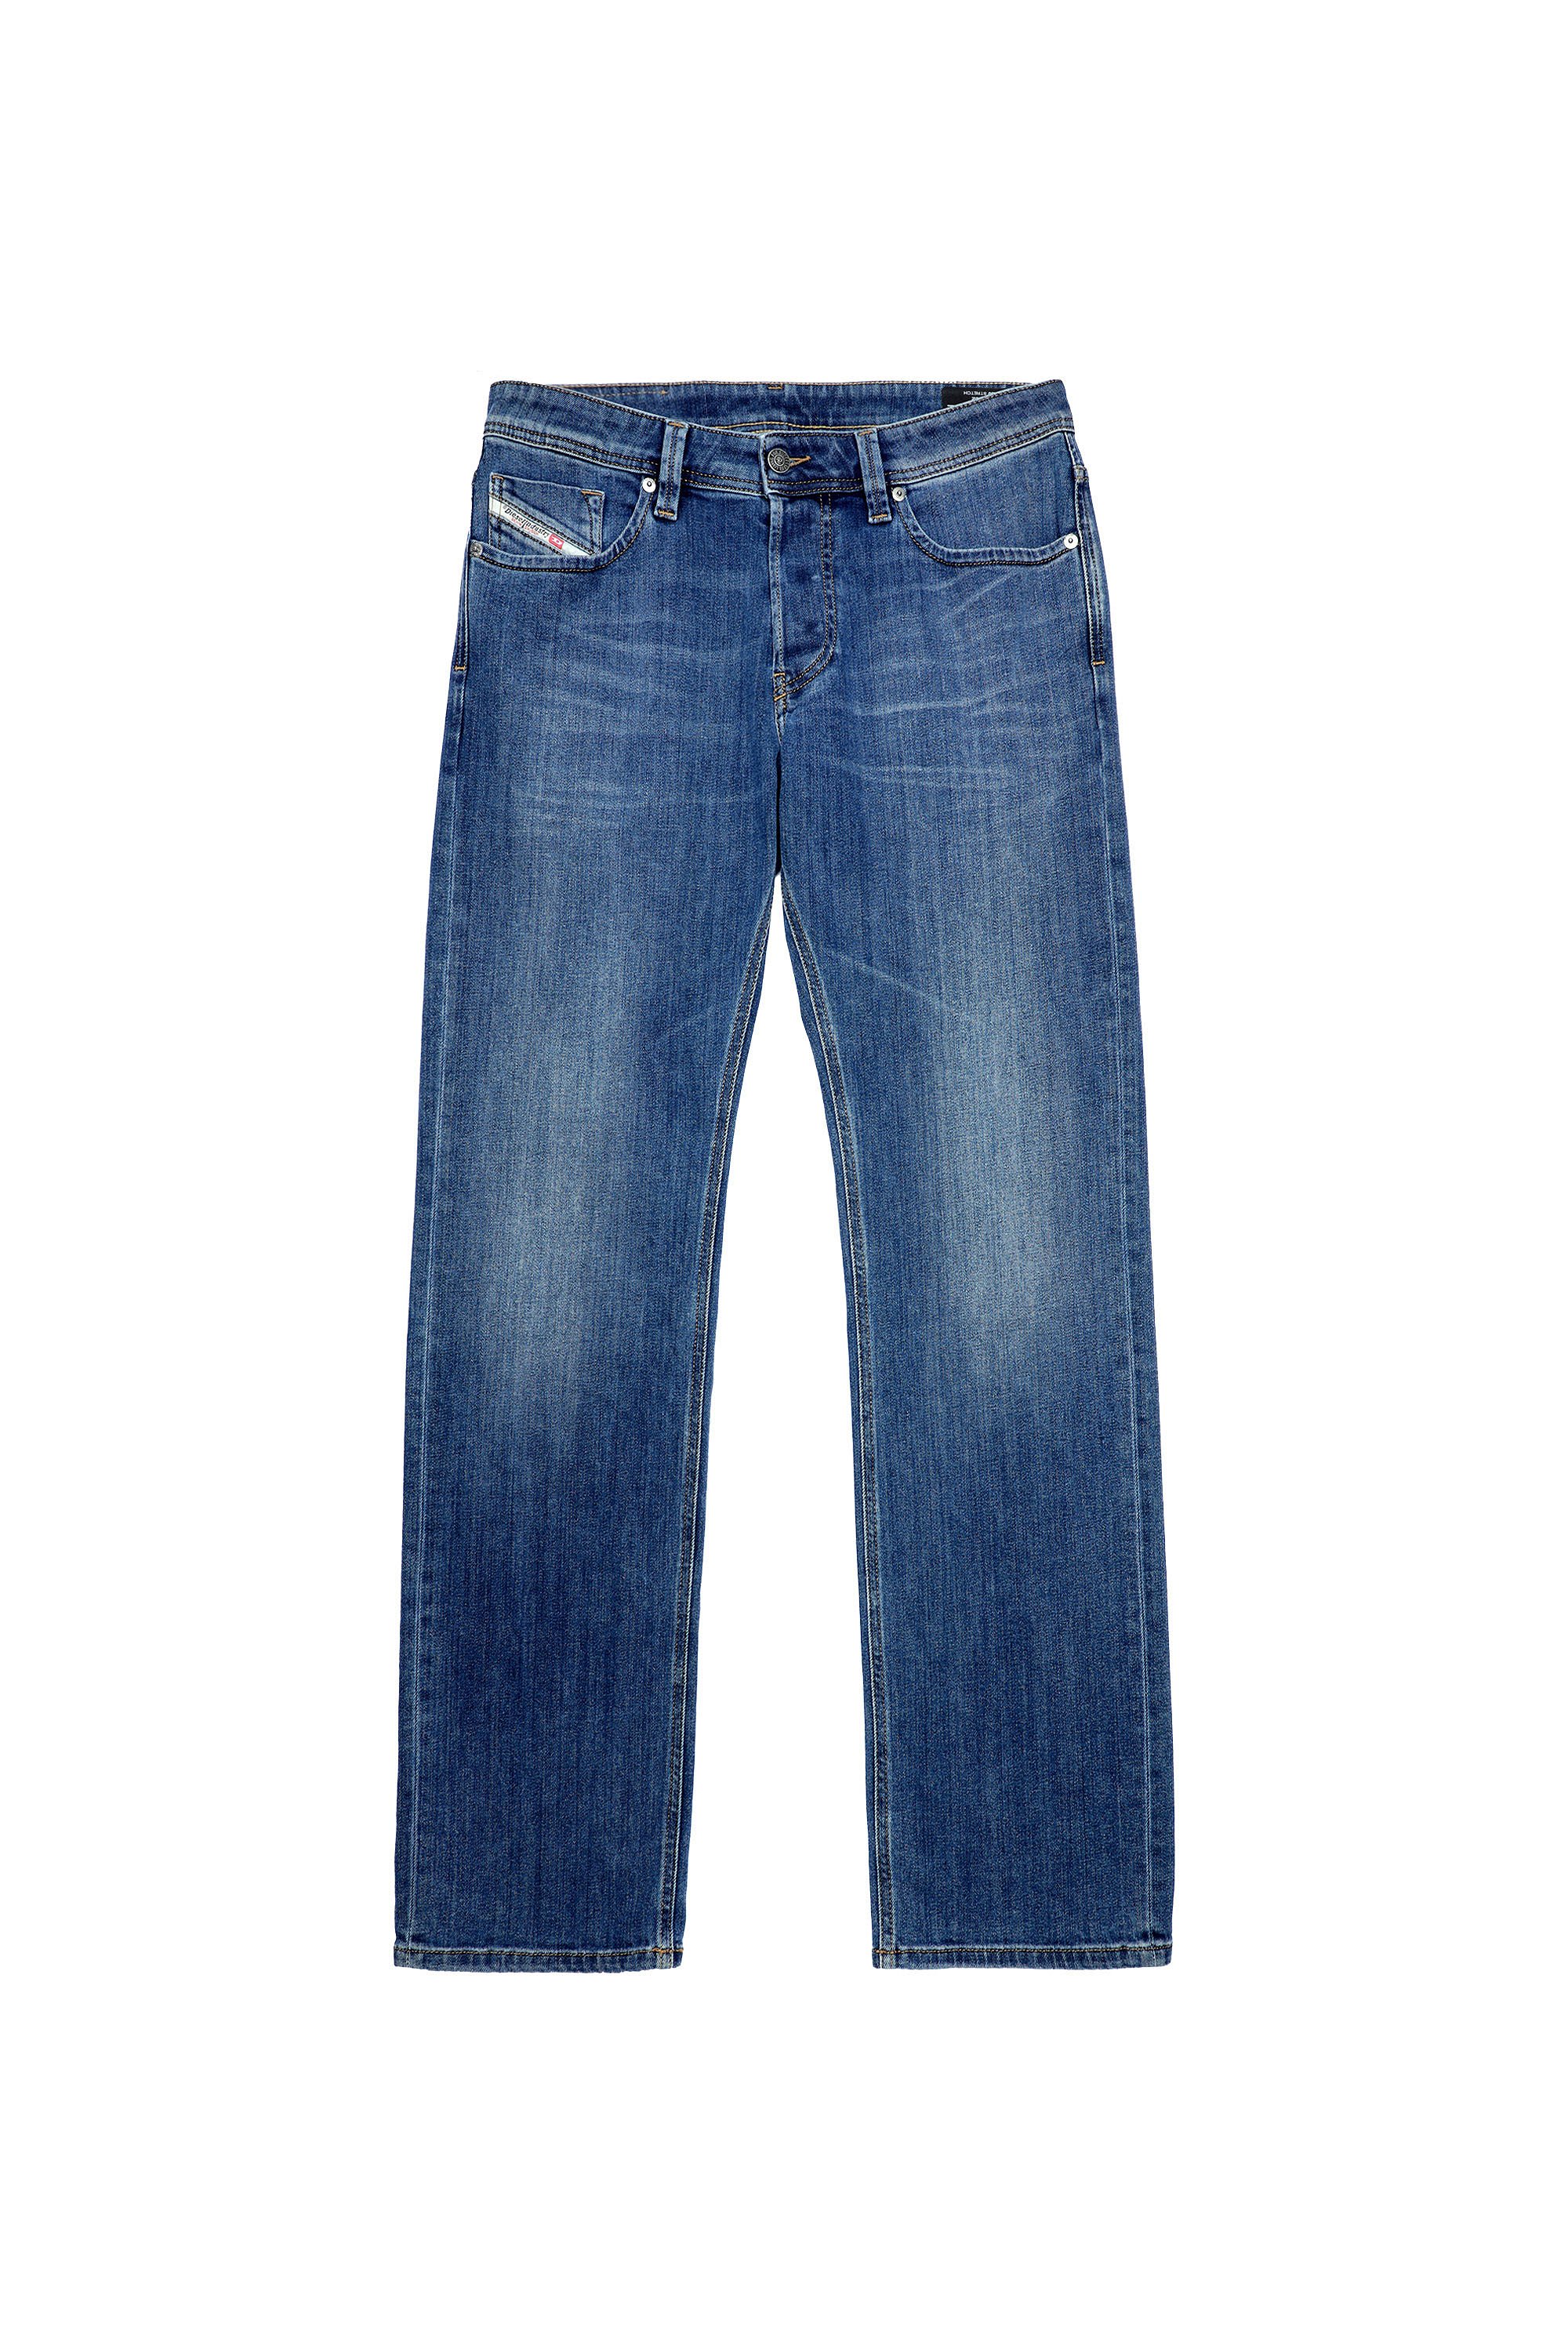 Diesel - Larkee Straight Jeans 09A80, Medium Blue - Image 6